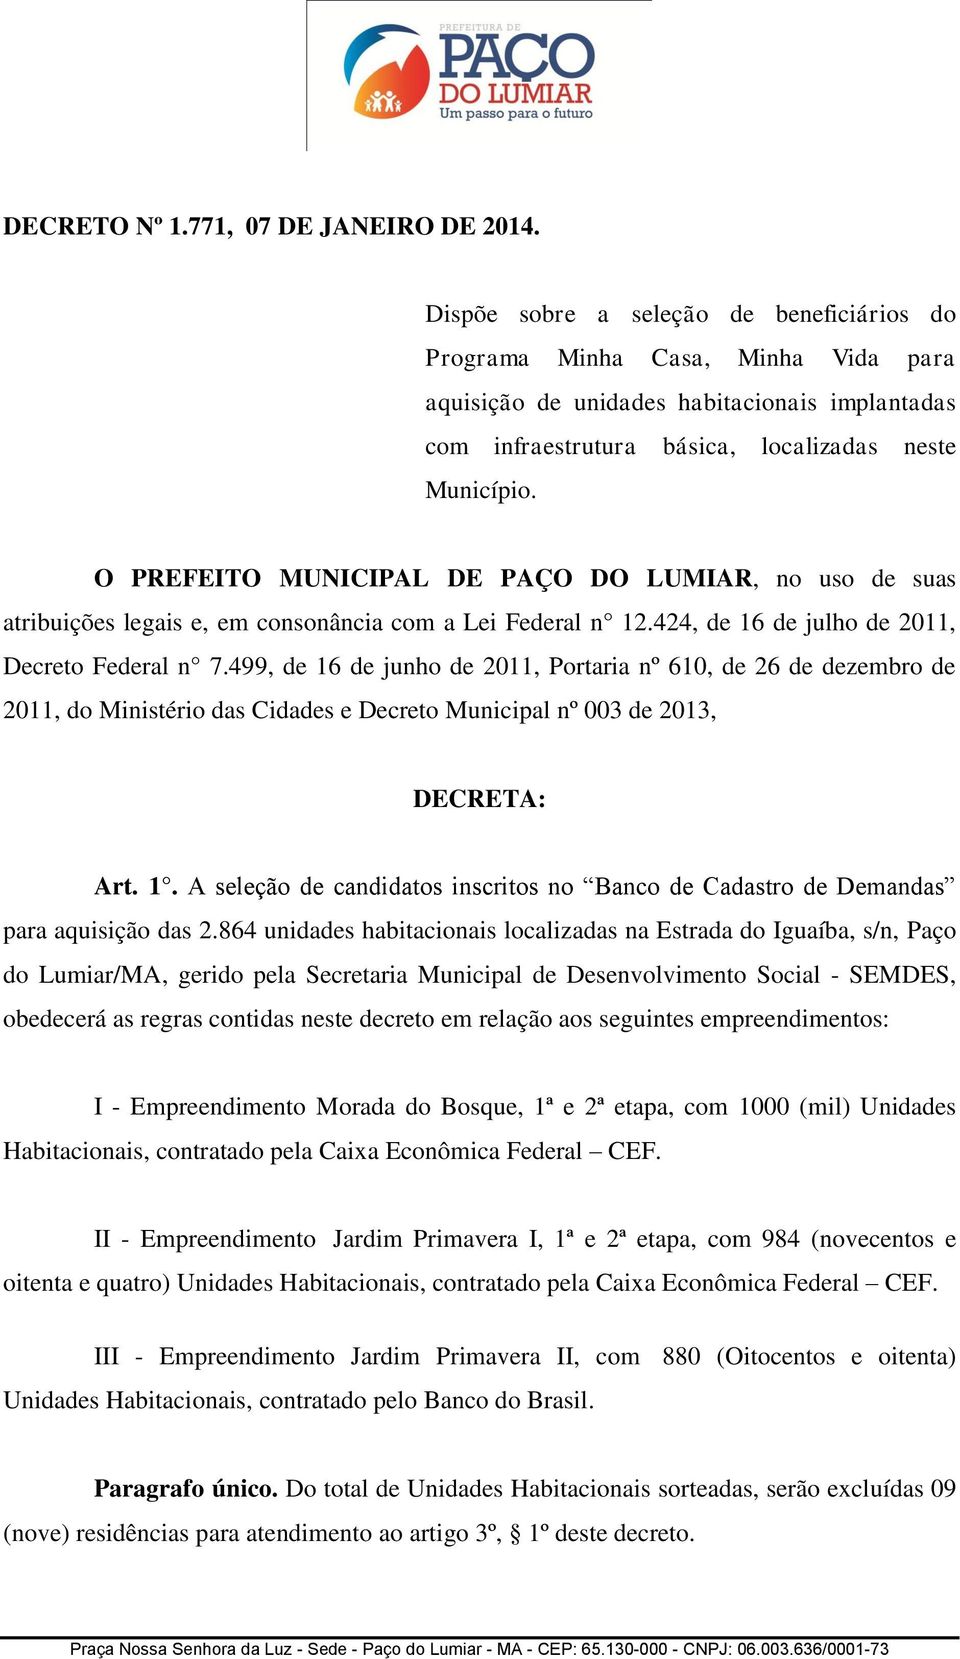 O PREFEITO MUNICIPAL DE PAÇO DO LUMIAR, no uso de suas atribuições legais e, em consonância com a Lei Federal n 12.424, de 16 de julho de 2011, Decreto Federal n 7.